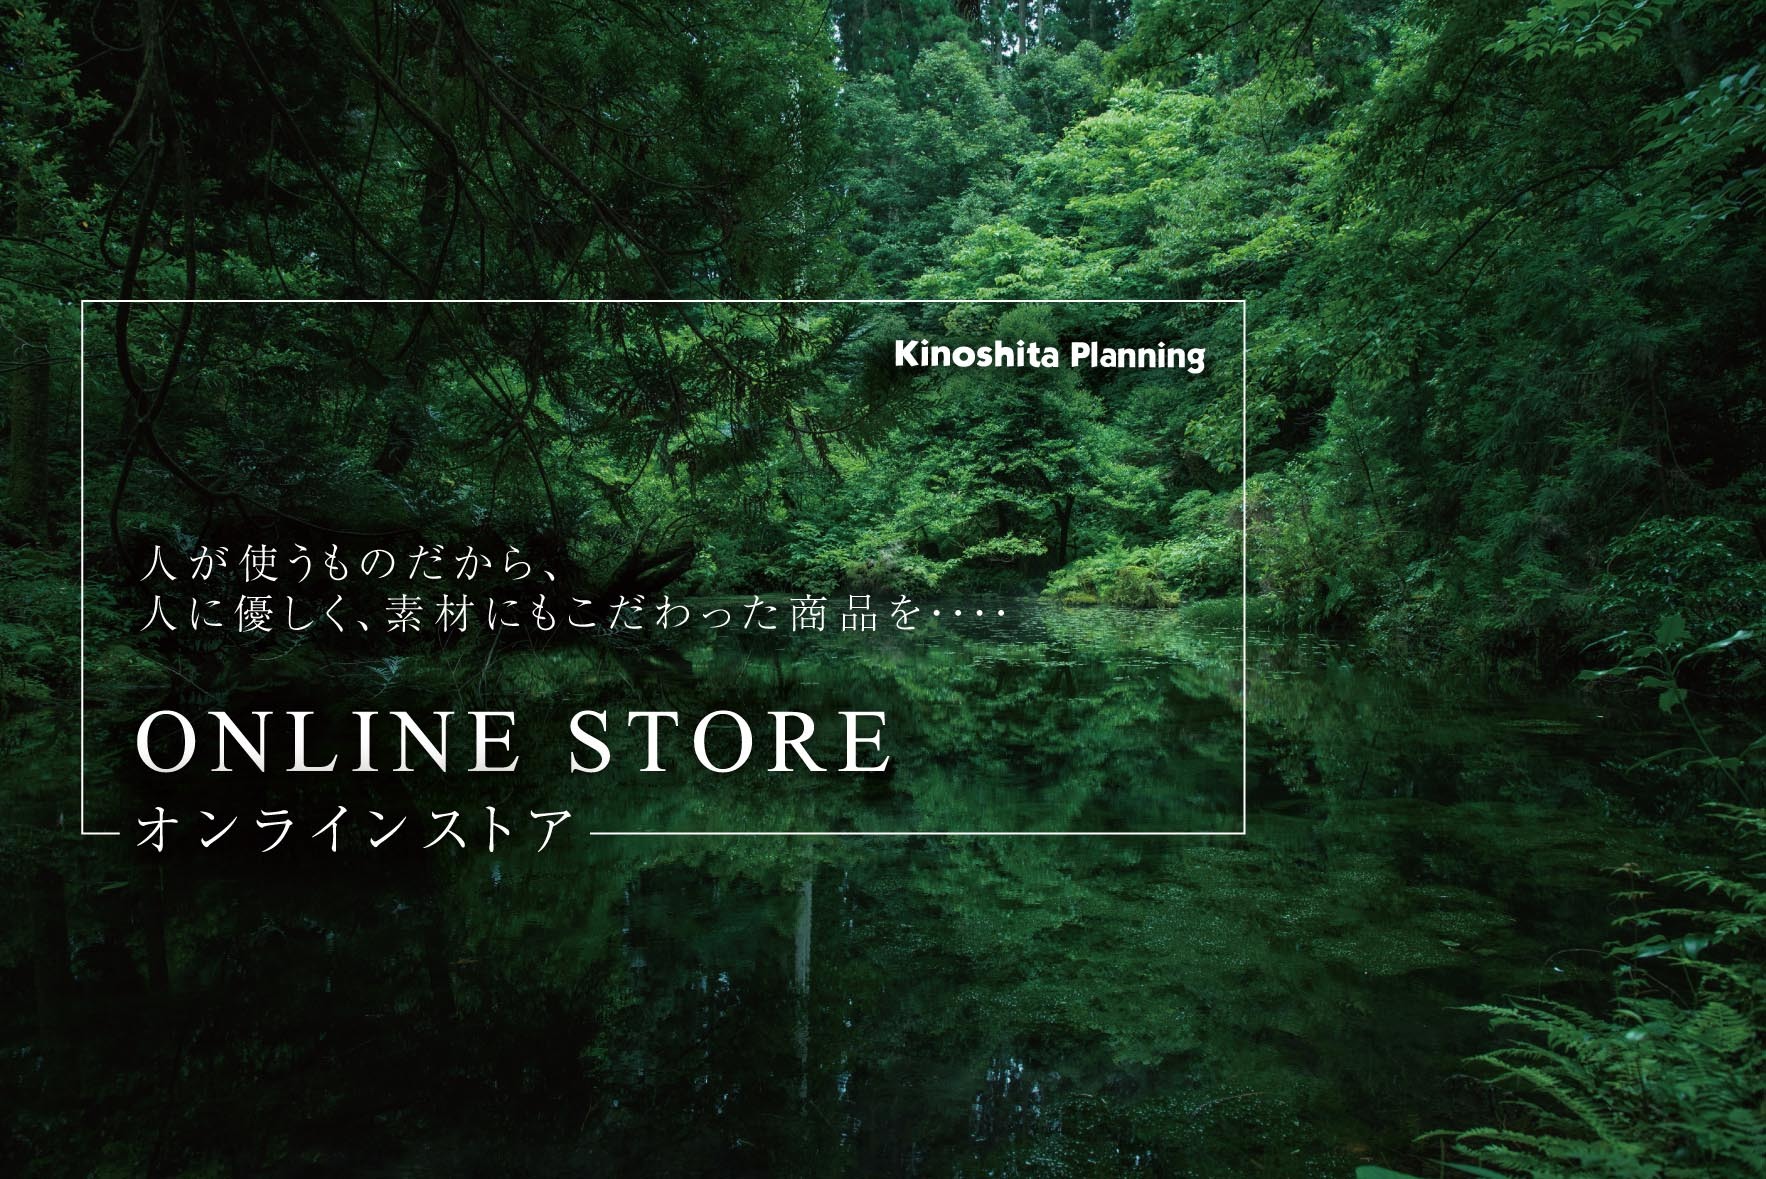 Kinoshita Planning OnlineShop